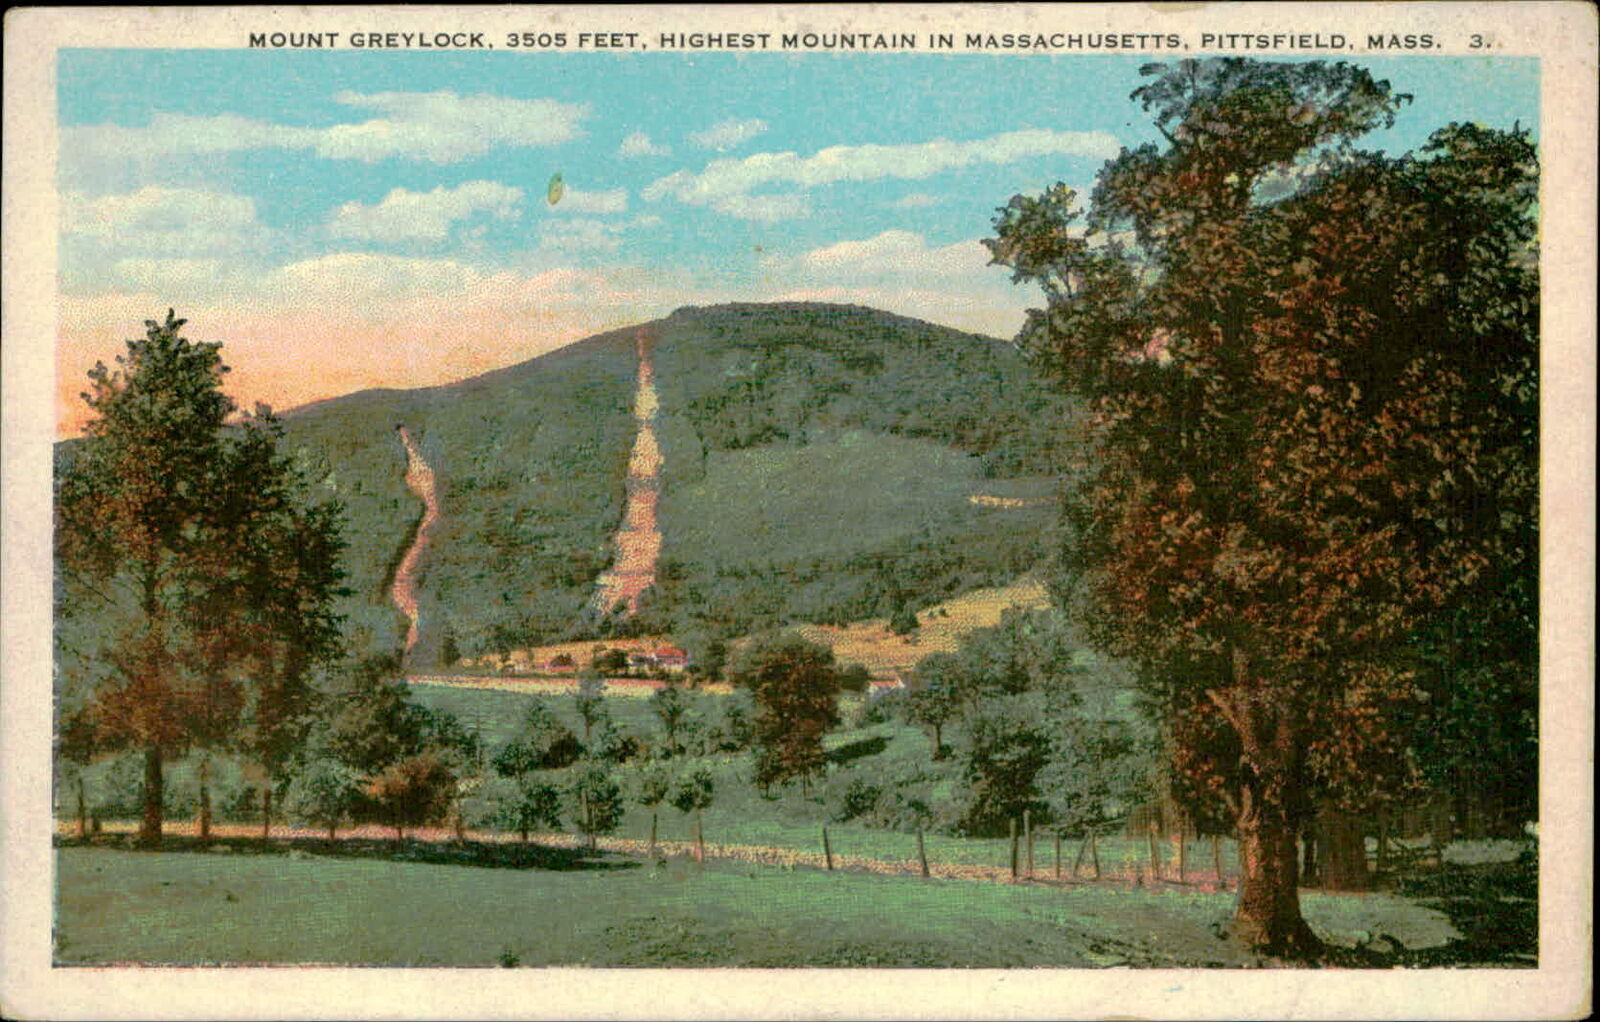 Postcard: MOUNT GREYLOCK, 3505 FEET, HIGHEST MOUNTAIN IN MASSACHUSETTS